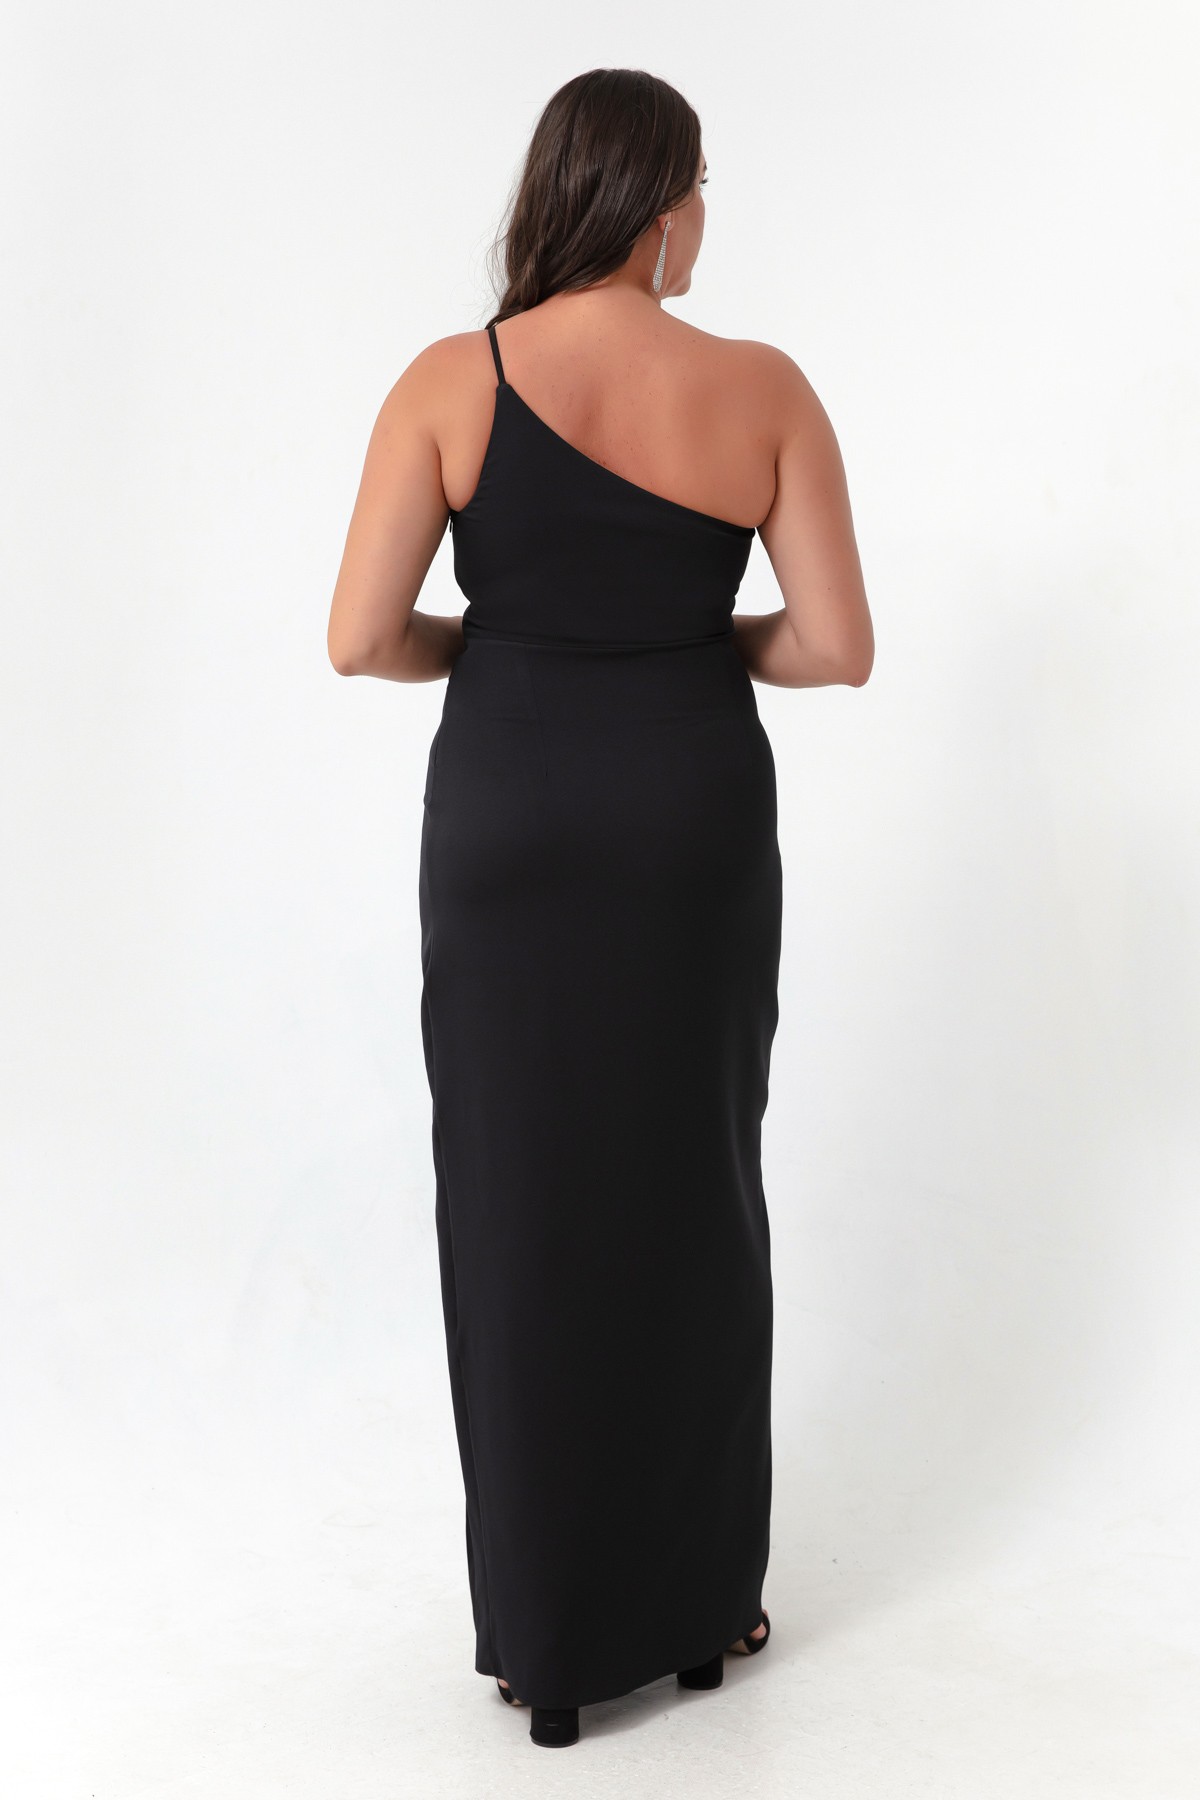 Kadın Tek Omuzlu Yırtmaçlı Büyük Beden Uzun Elbise - Siyah